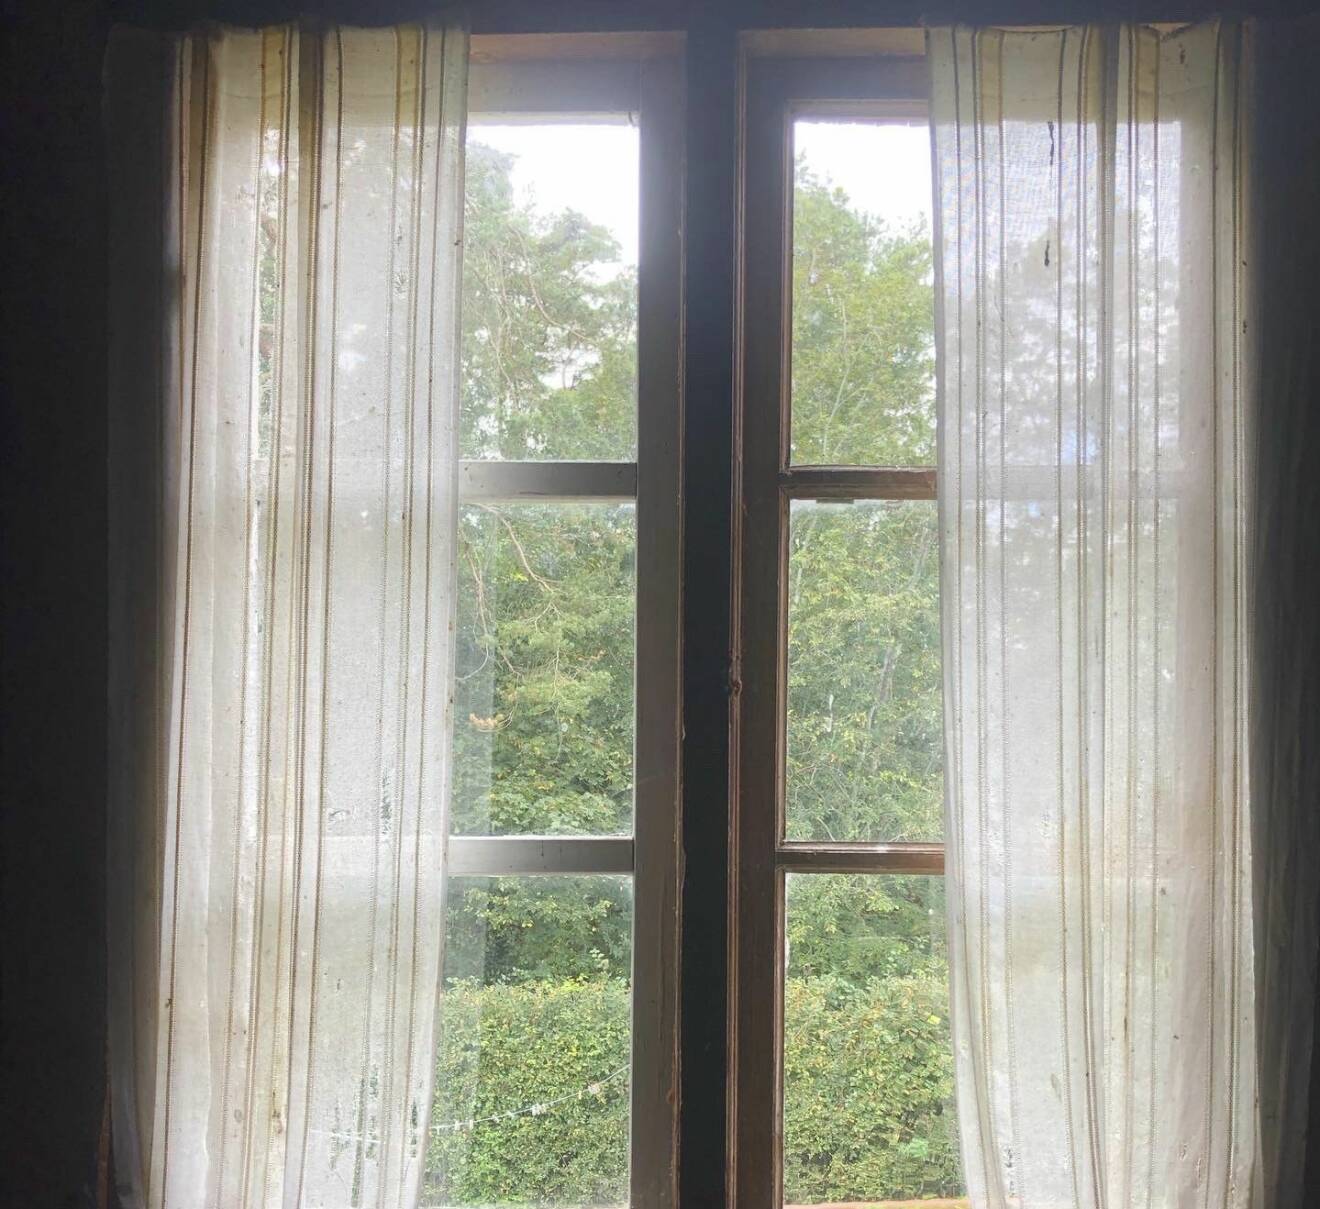 I ett fönster till ett övergivet hus hänger trasiga, solblekta gardiner.